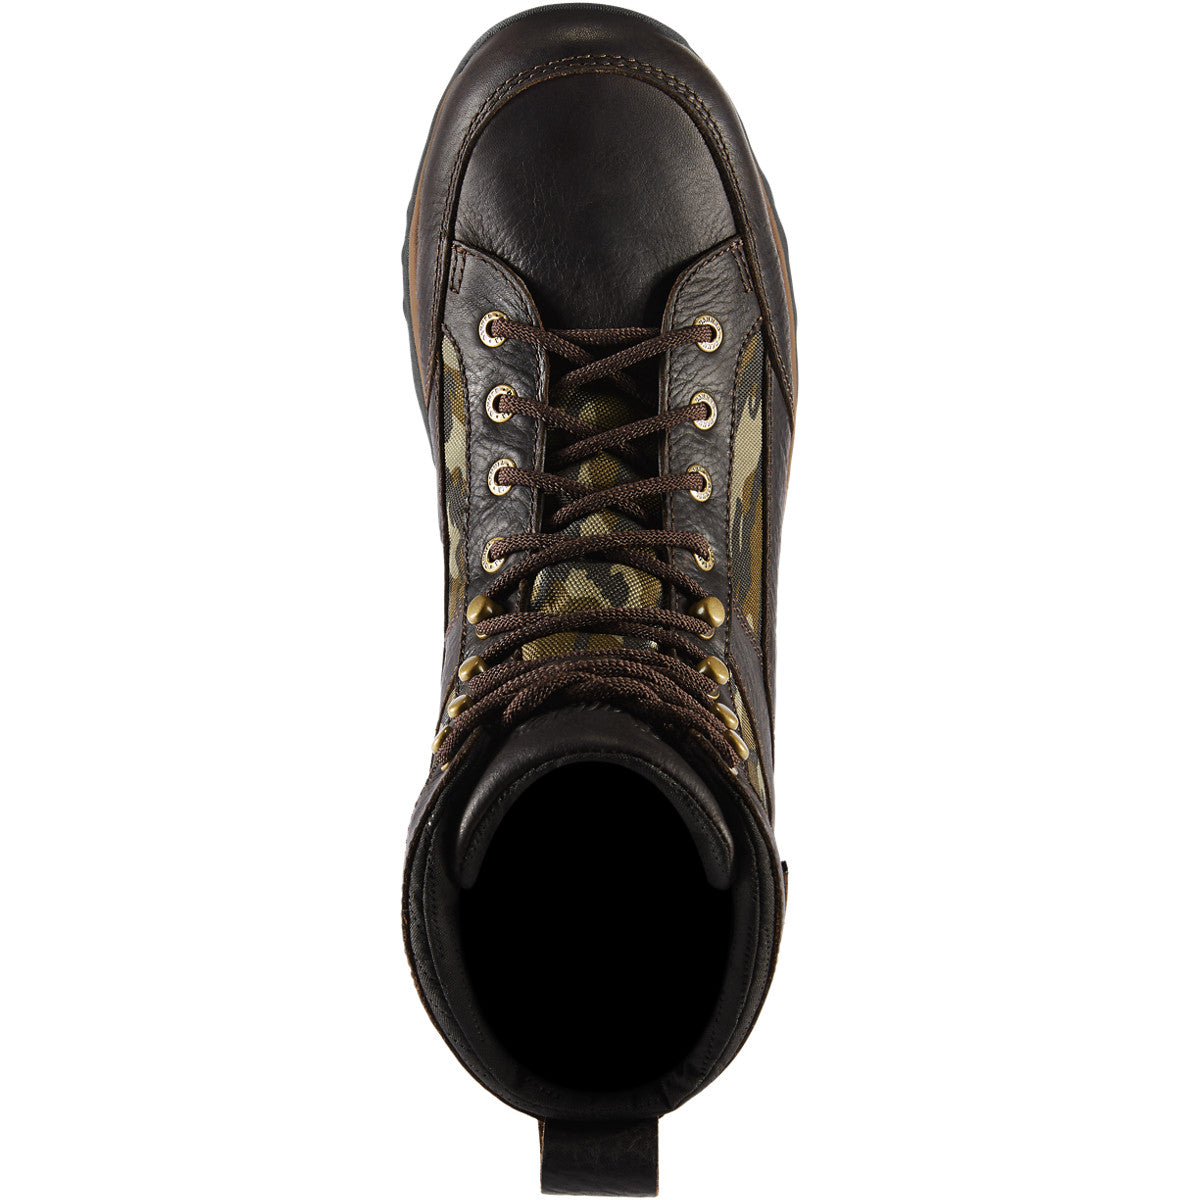 Danner Men's Recurve 7" WP Hunt Boot - Mossy Oak Bottomland - 47613  - Overlook Boots